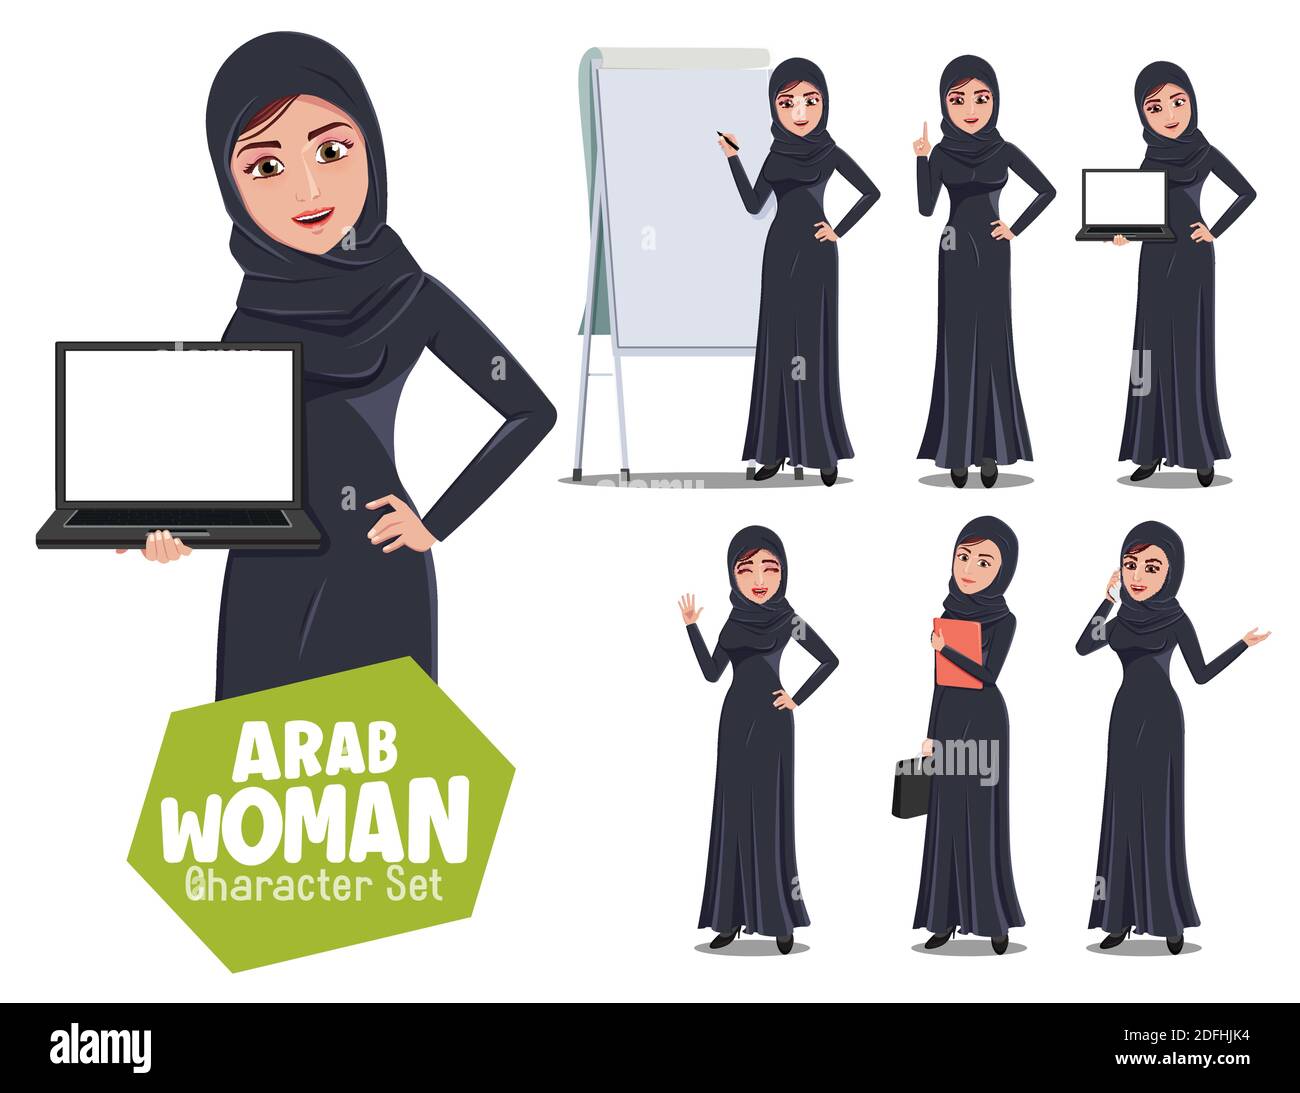 Arabische Frau Charakter Lehrer Vektor-Set. Arabische weibliche Charaktere in Lehre und Präsentation Pose und Geste für arabische Dame Instruktor Cartoon. Stock Vektor